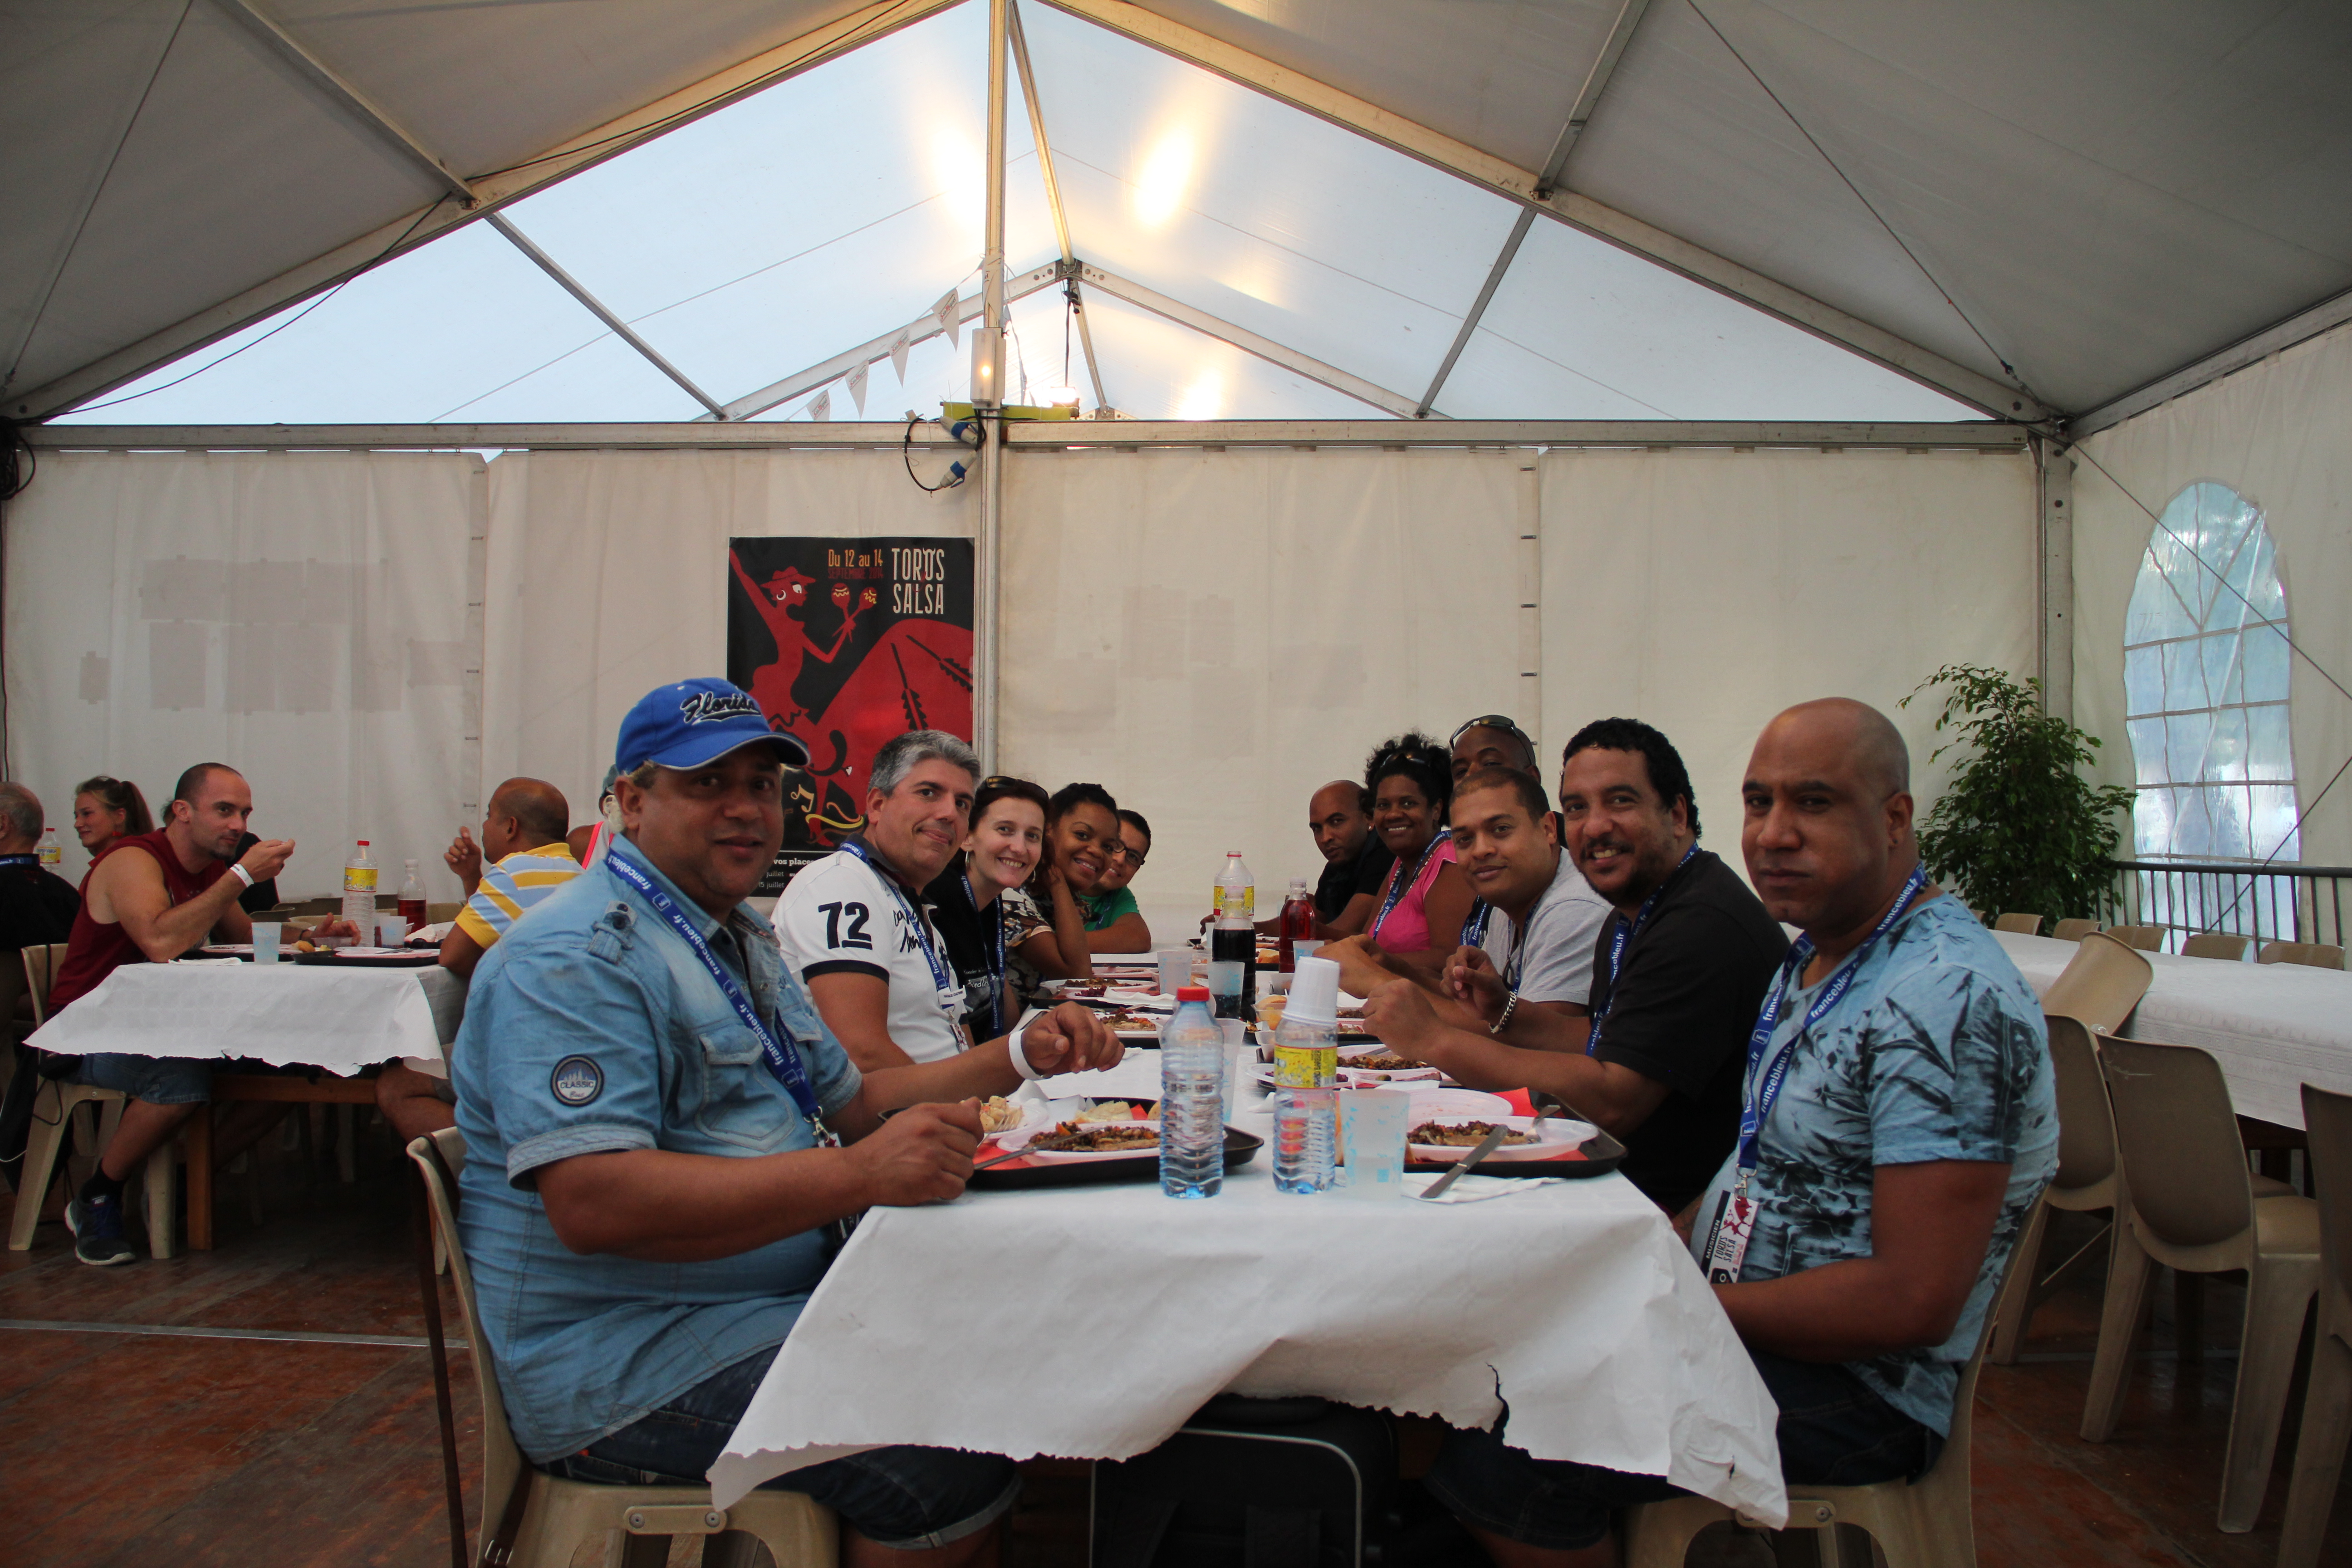 Festival Toros y Salsa Dax 2014